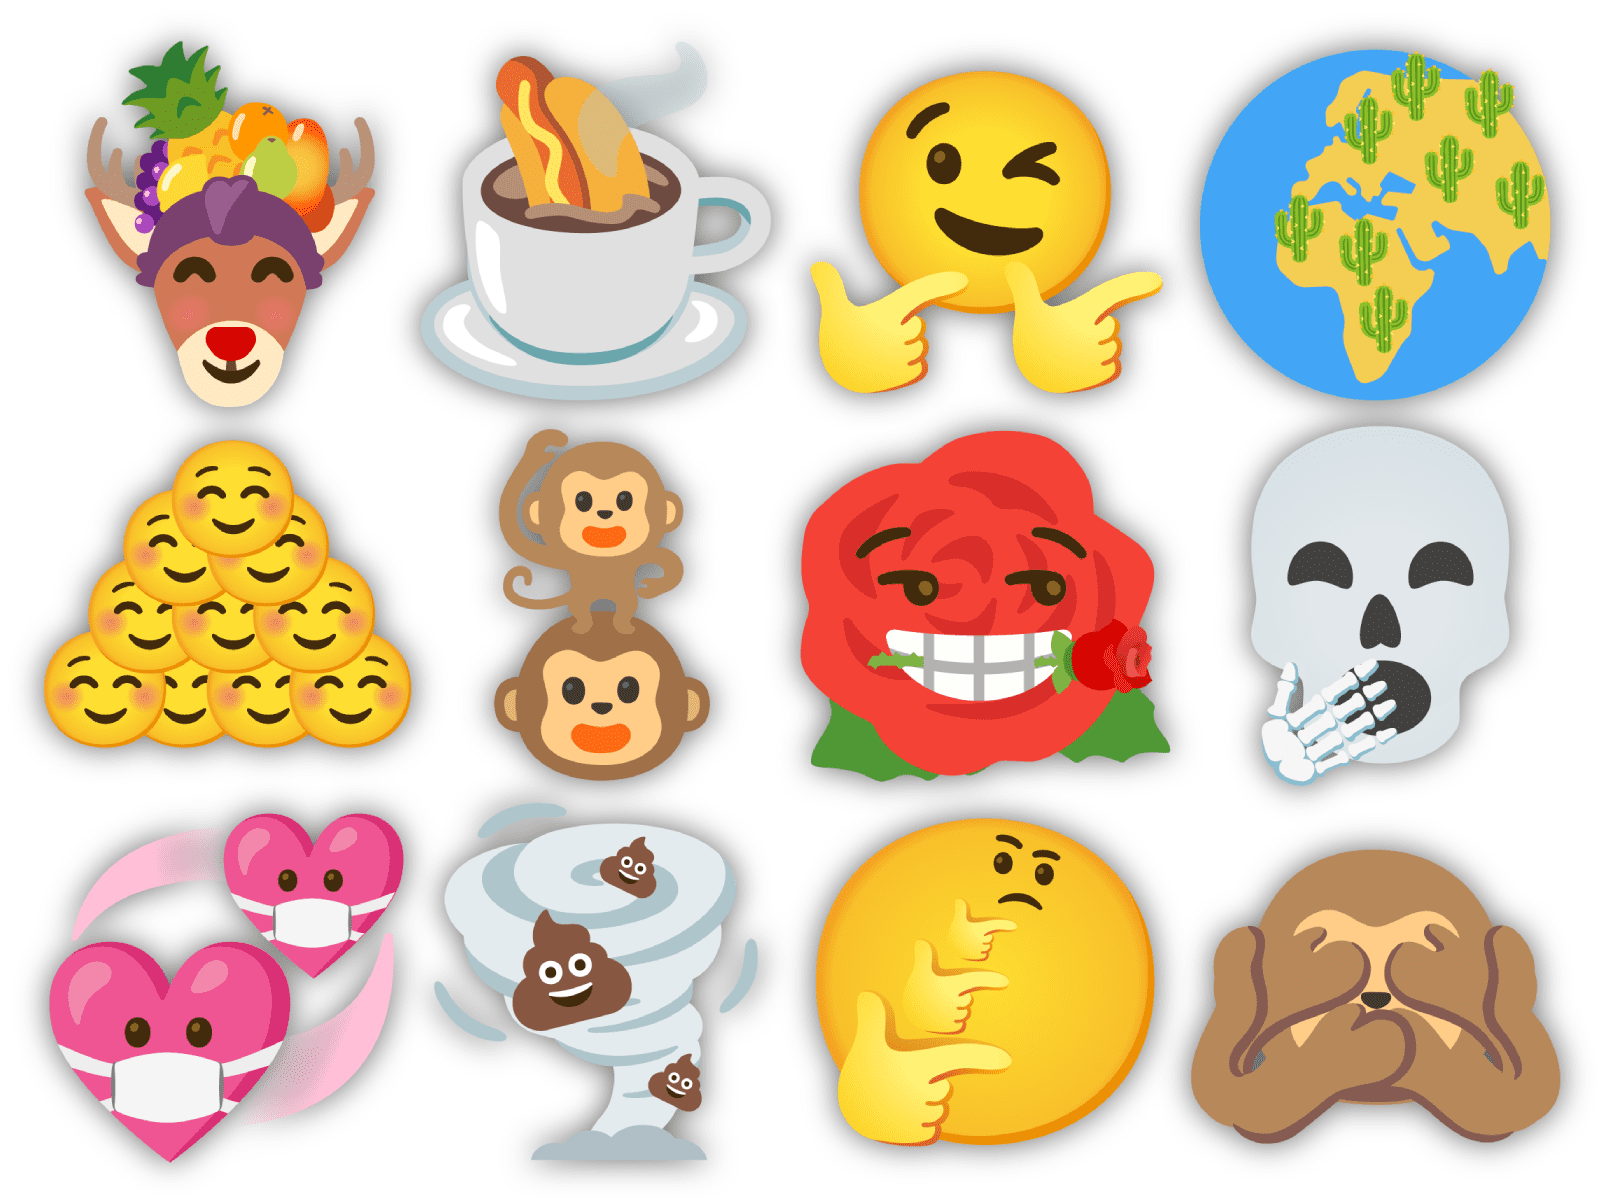 160 tolle, lächerliche und geradezu gruselige Gboard-Emoji-Kombinationen, die du ausprobieren solltest 5